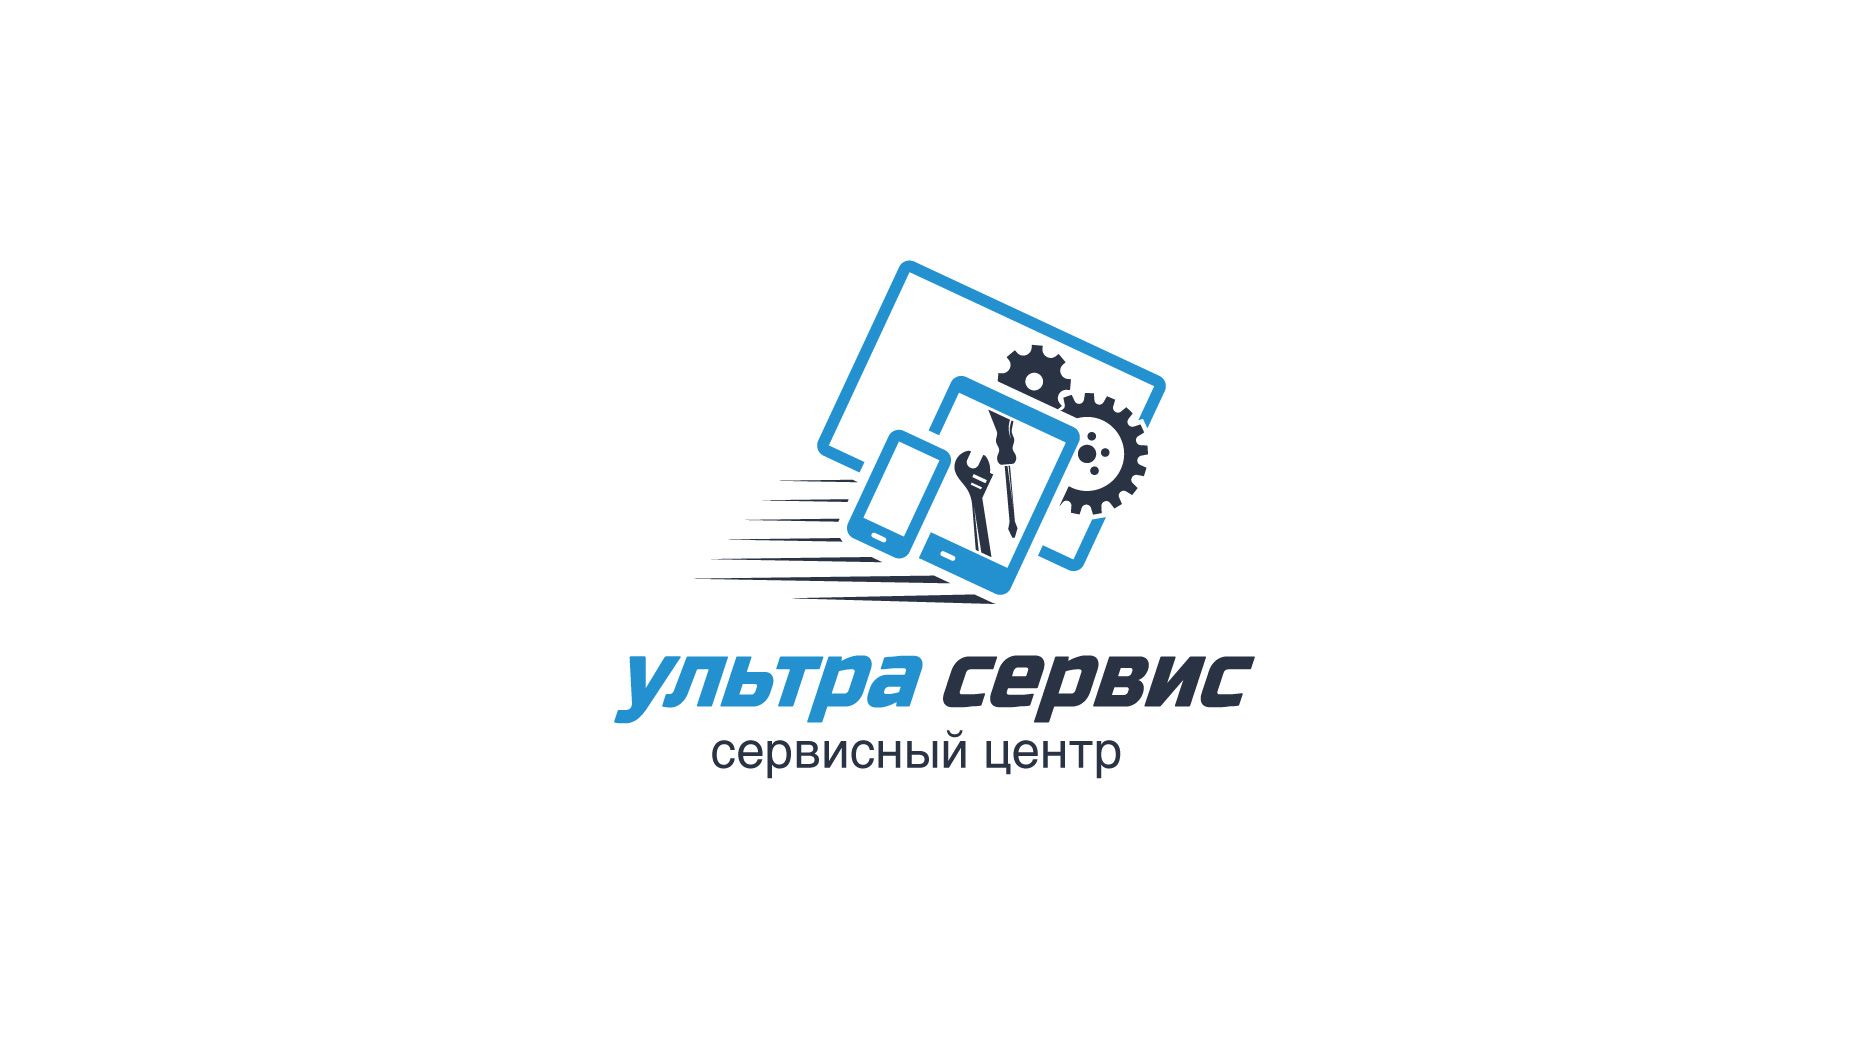 Логотип и фирменный стиль сервисного центра - дизайнер vadimsoloviev